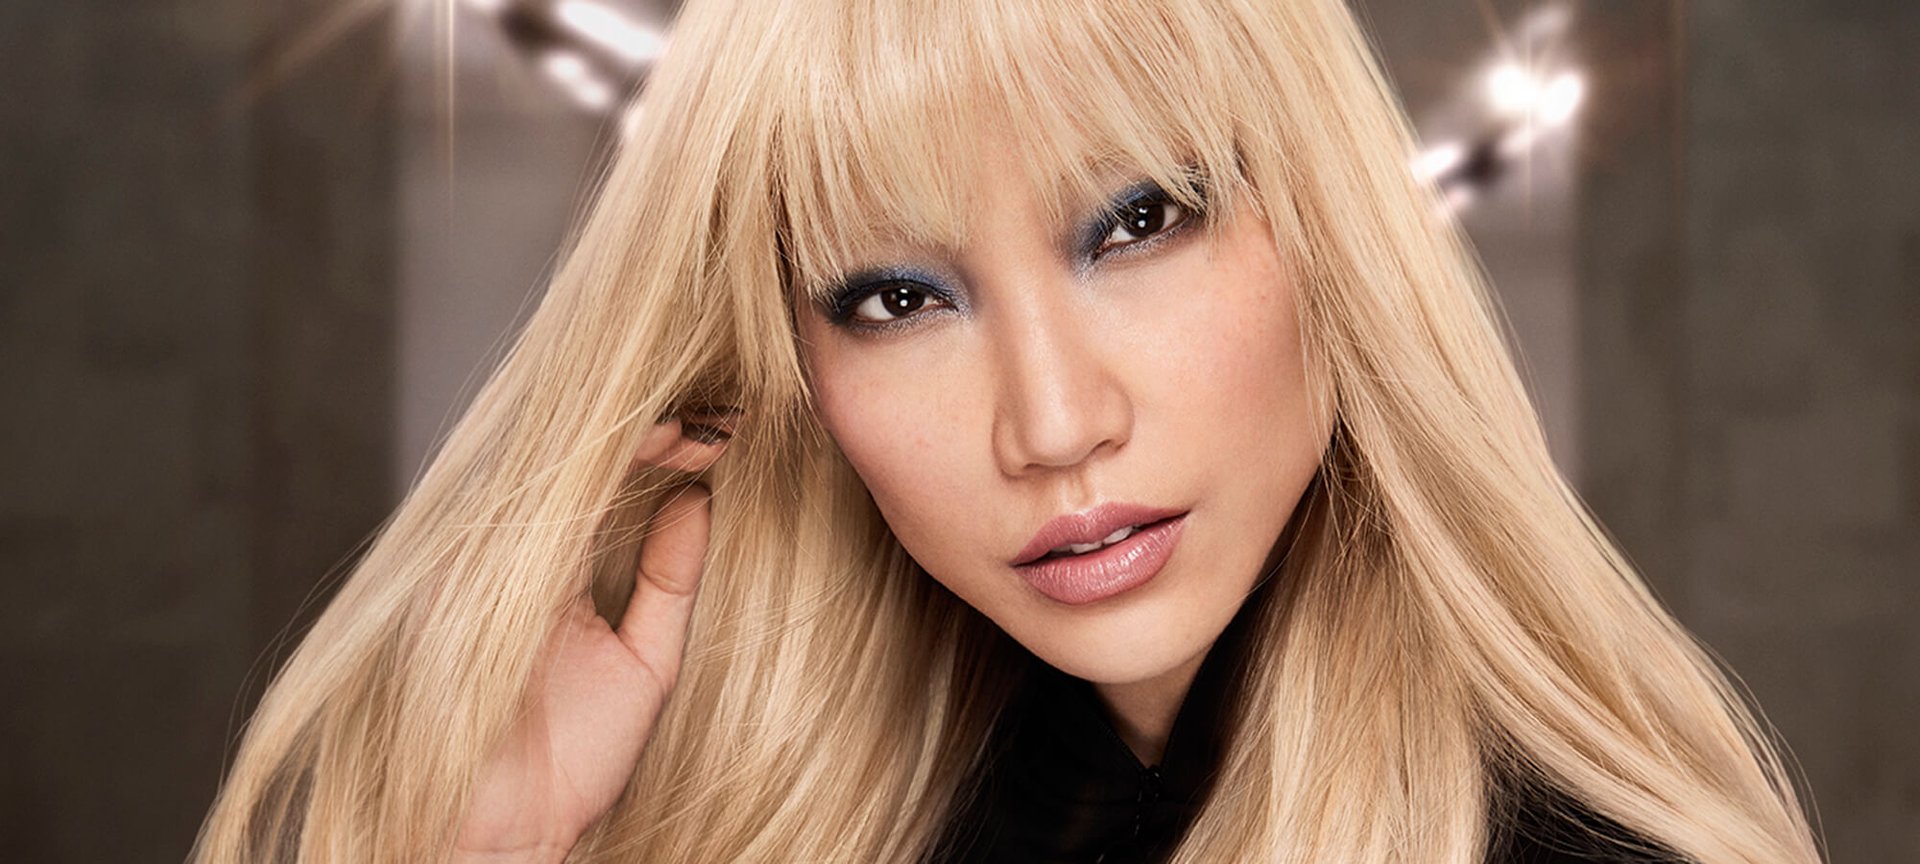 Knipperen condensor Elektrisch Blond haar verven | L'Oréal Paris